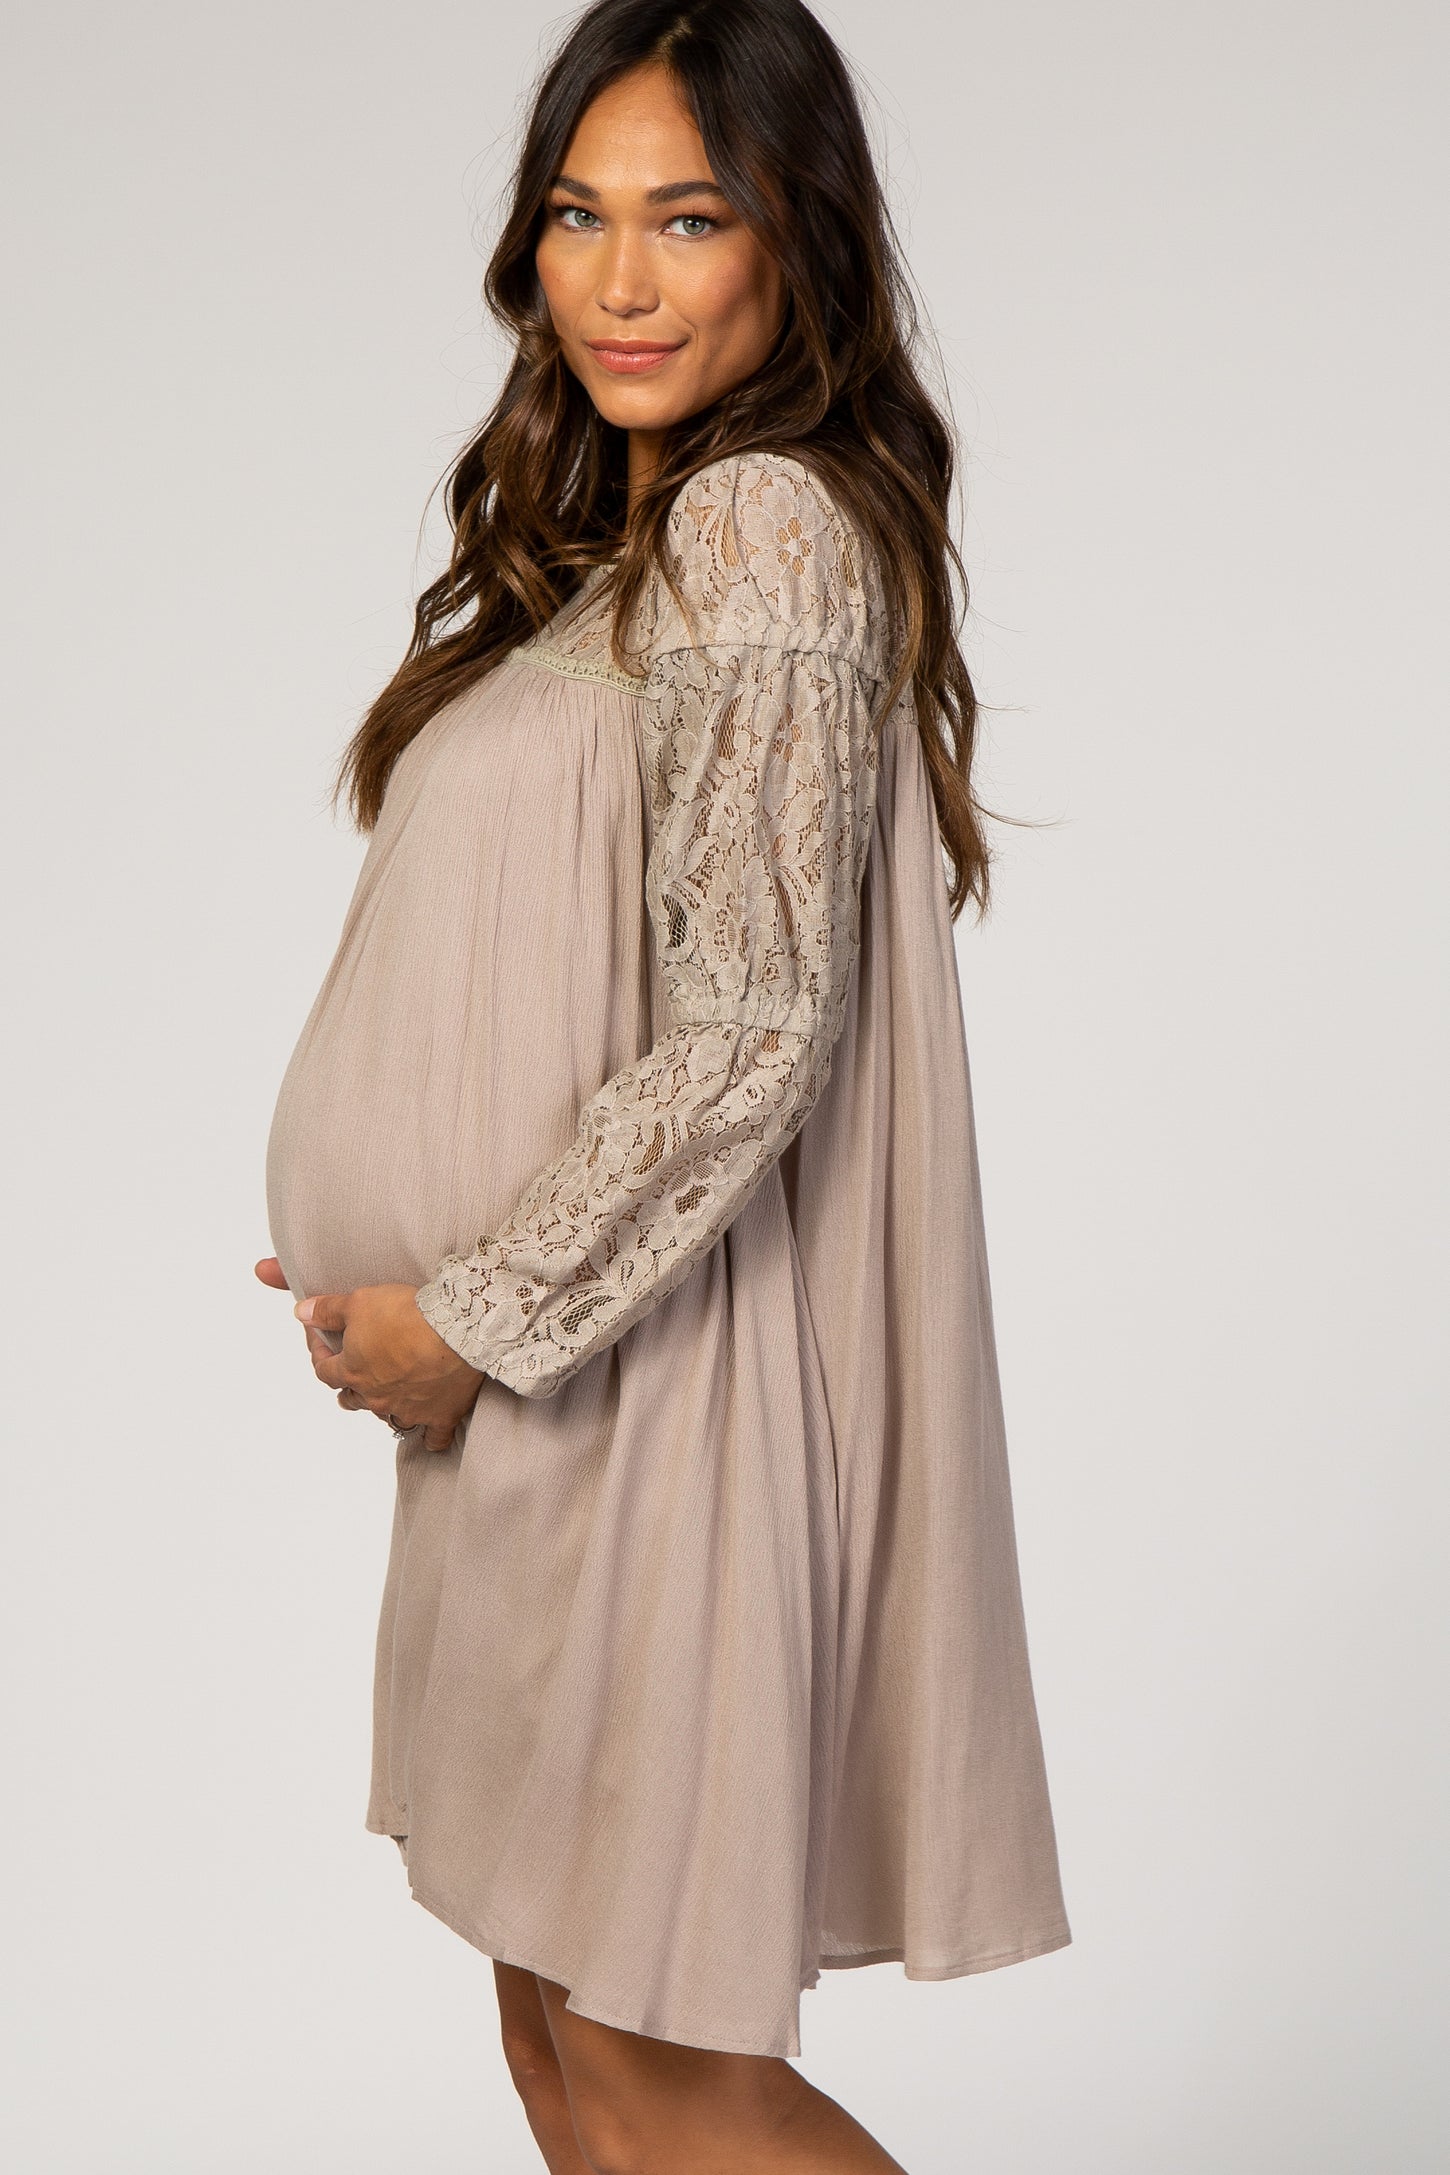 Taupe Long Sleeve Lace Keyhole Back Maternity Dress